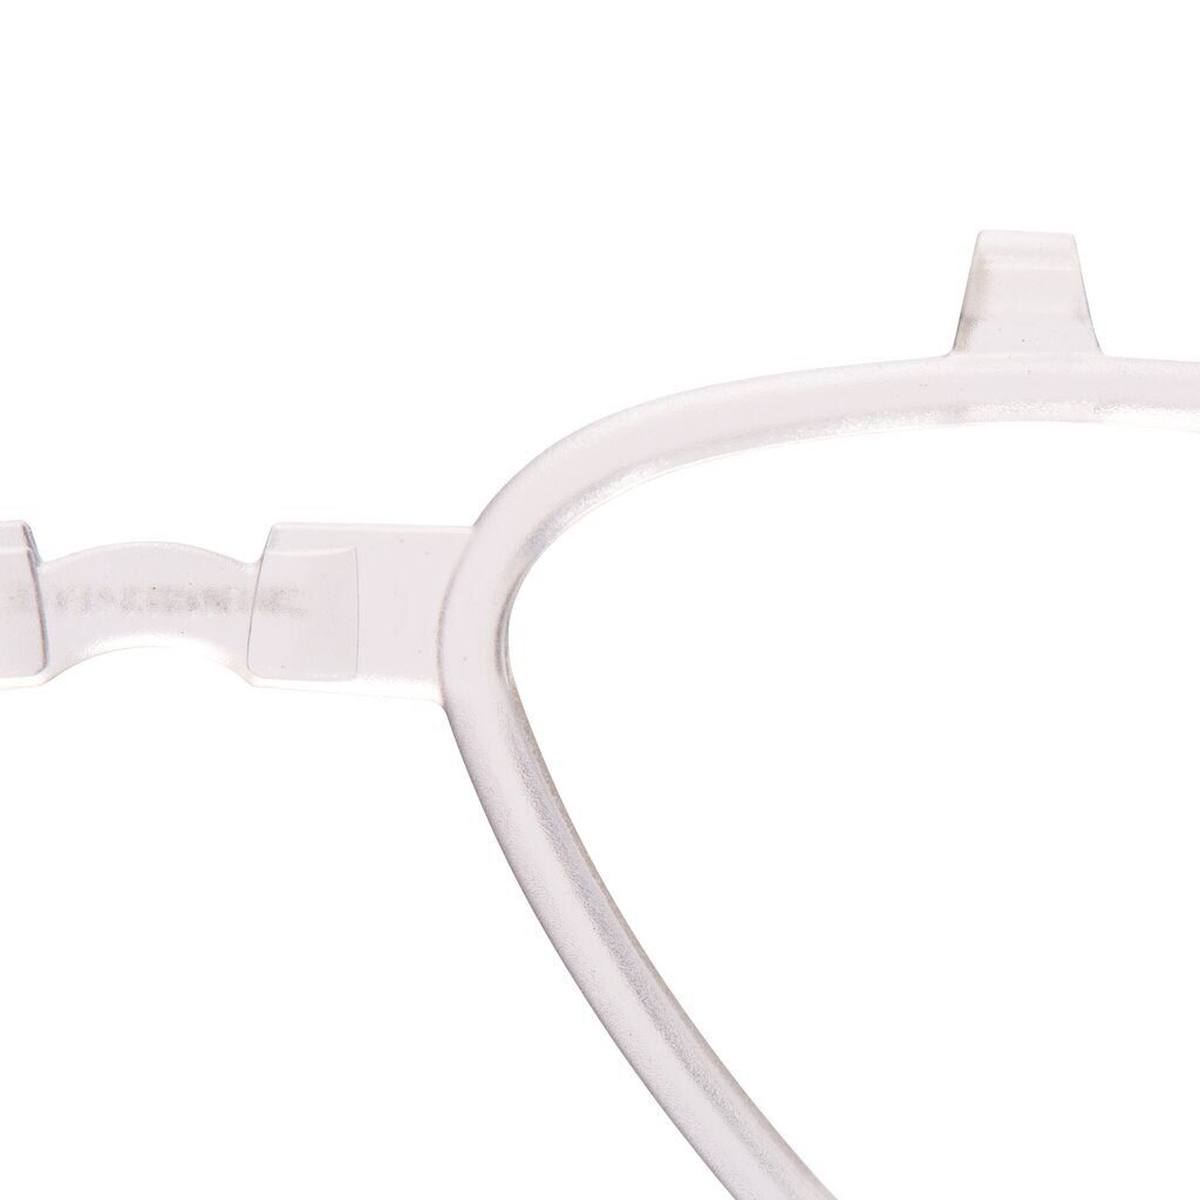 inserto da vista 3M per occhiali GoggleGear 500, Scotchgard Anti-Fog, UV, full vision GG500KI / GG500PI-EU